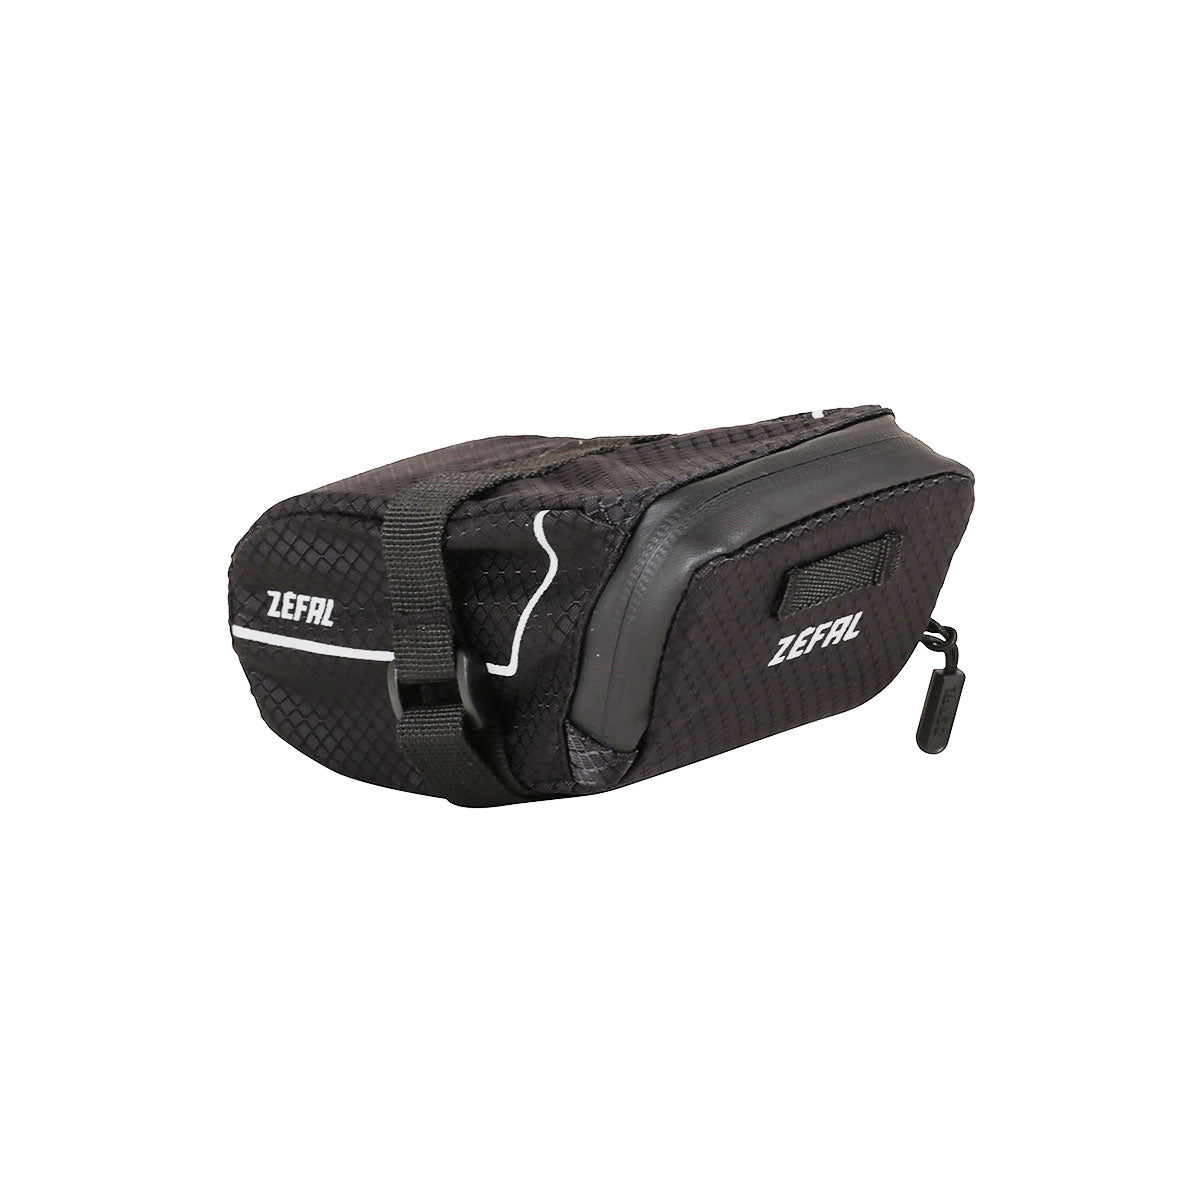 Zefal Z Light Pack XS - Saddle Bag 48